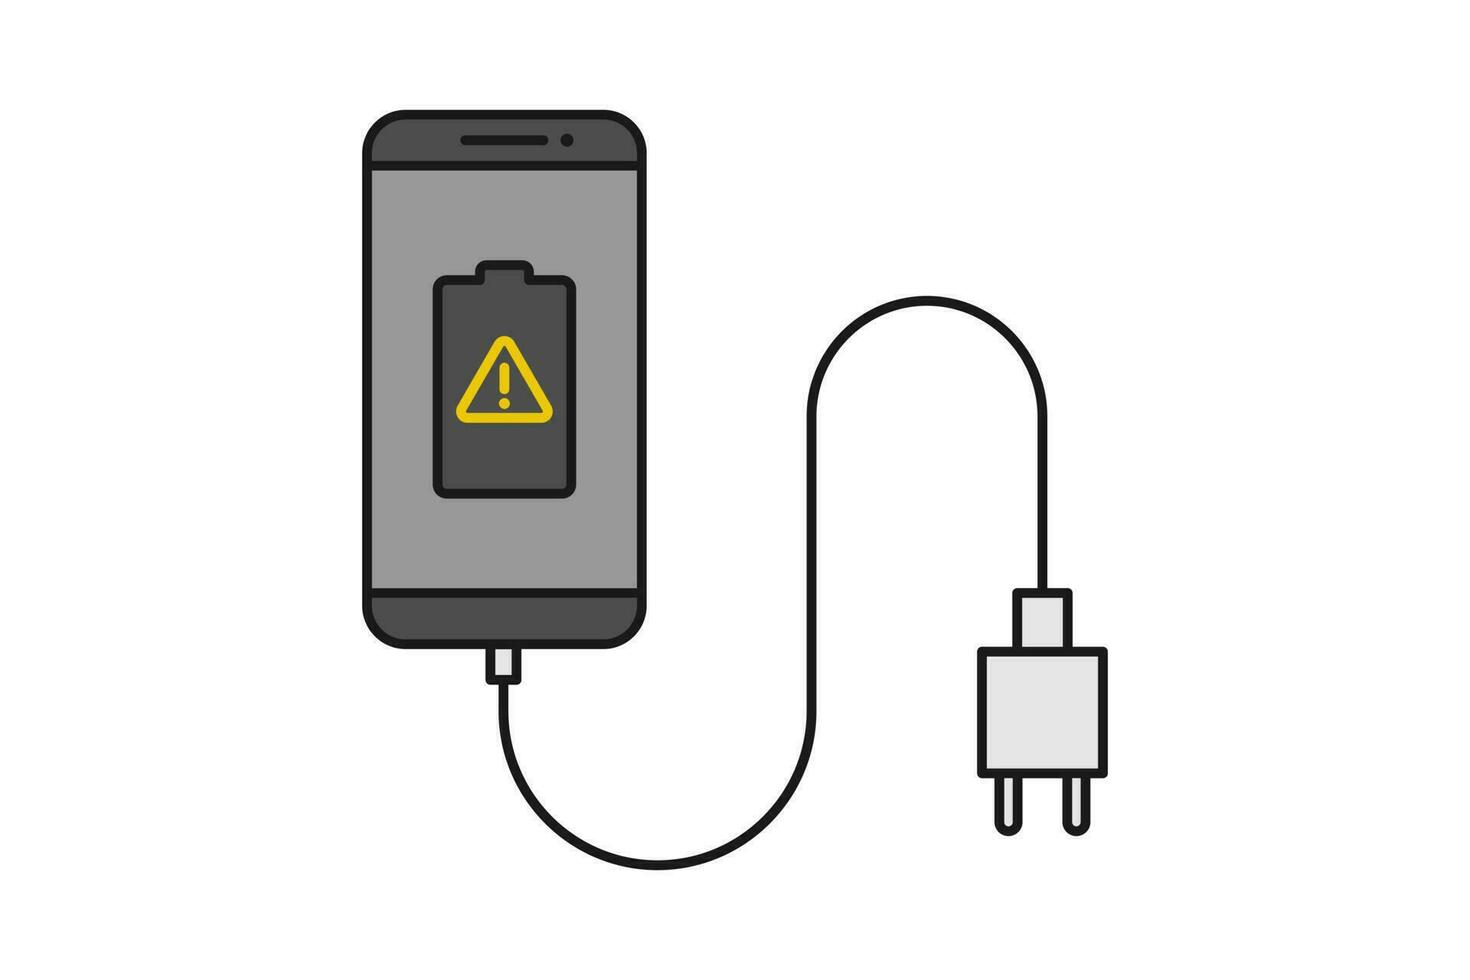 smartphone caricabatterie adattatore linea icona cartello simbolo vettore, smartphone, elettrico PRESA, adattatore, danneggiato batteria notifica vettore